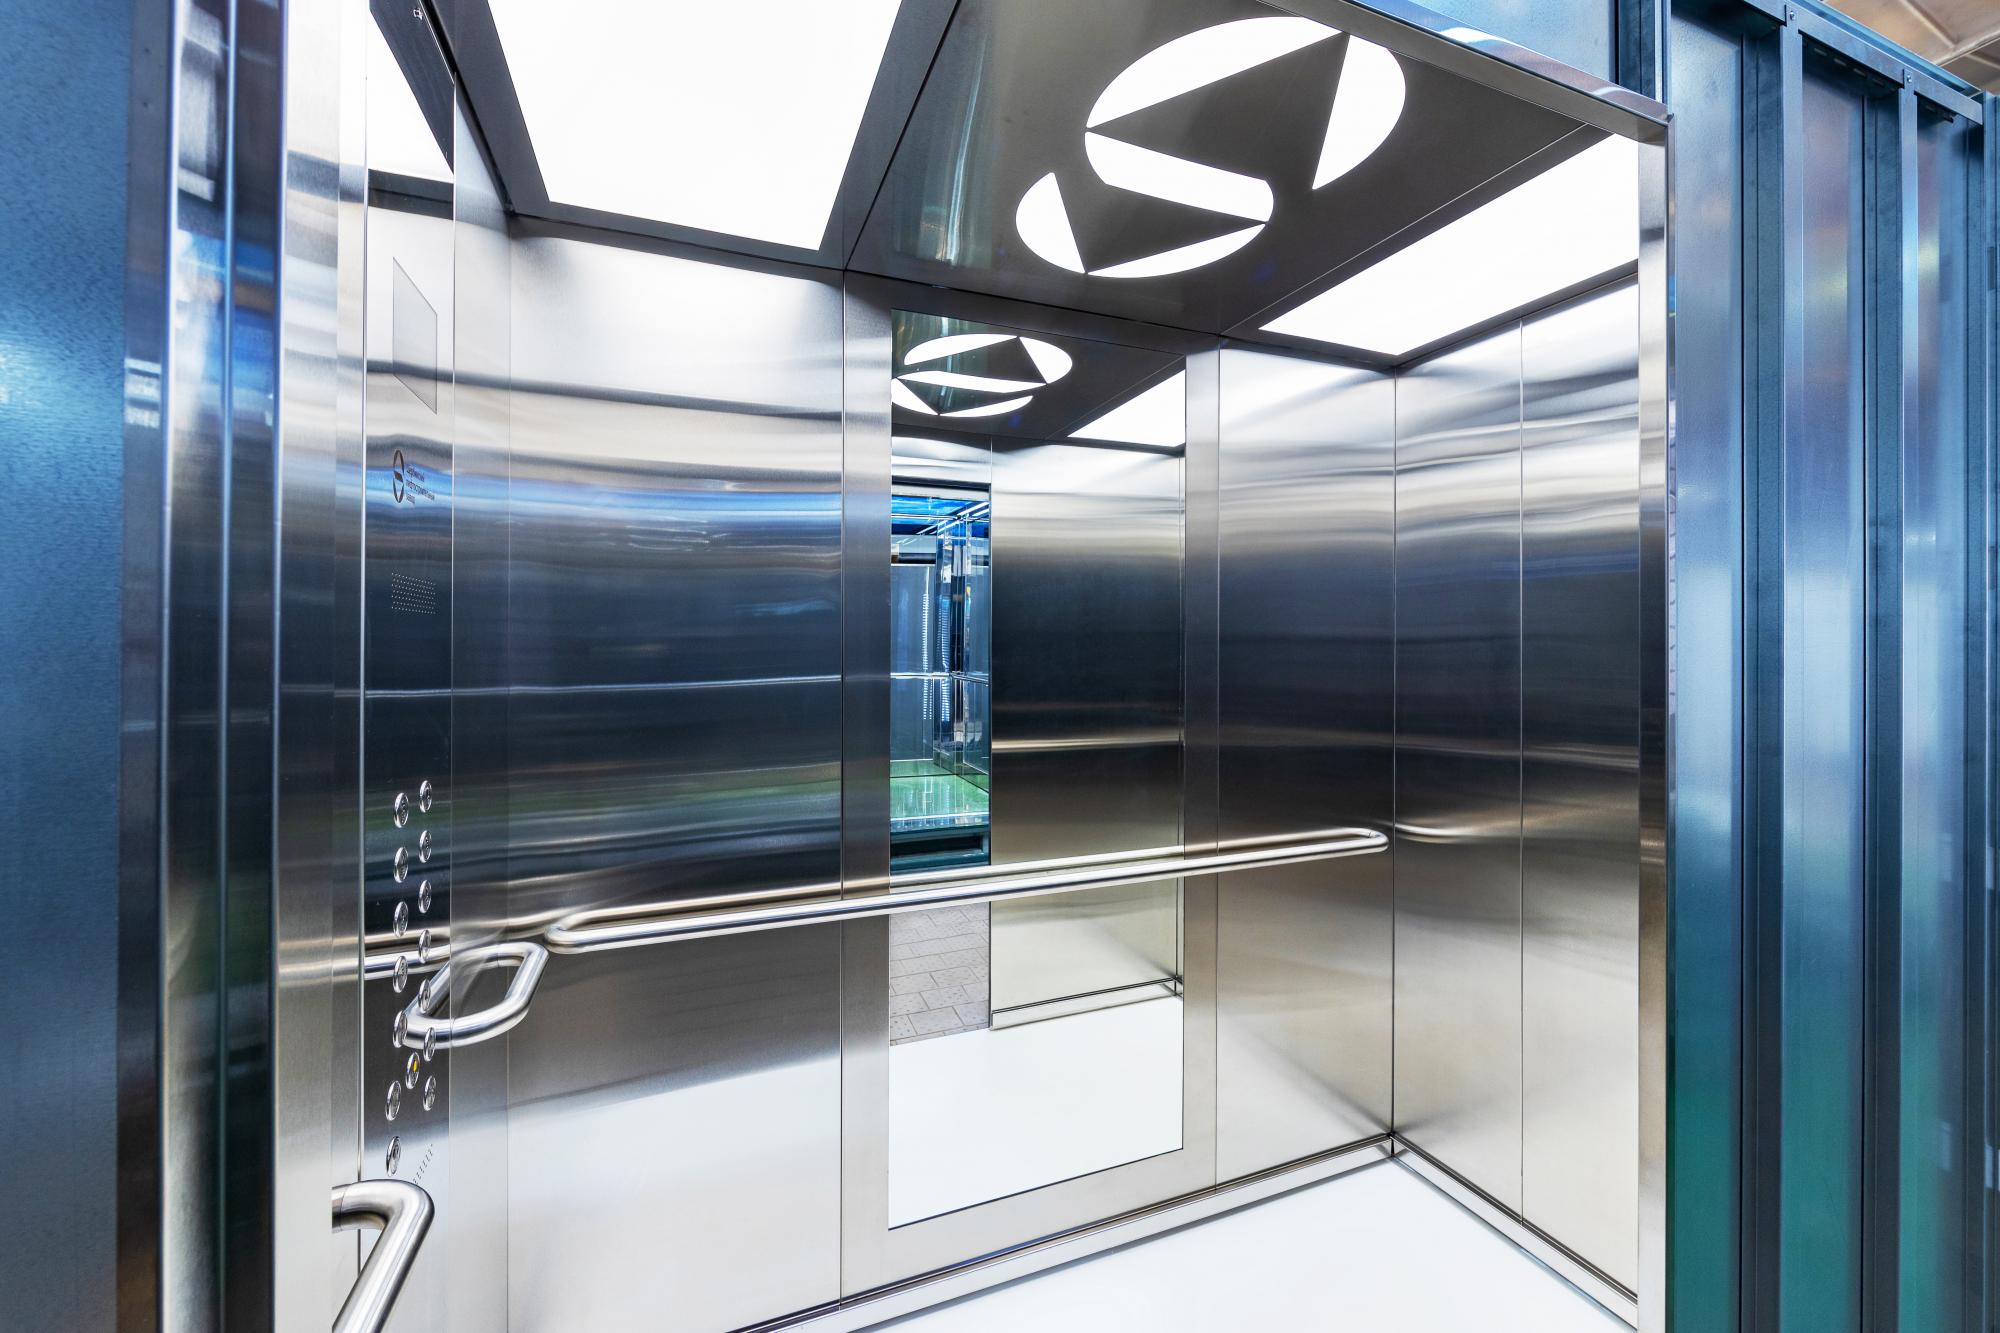 ЩЛЗ поставит лифты для крупнейшего ЖК в северном округе Москвы